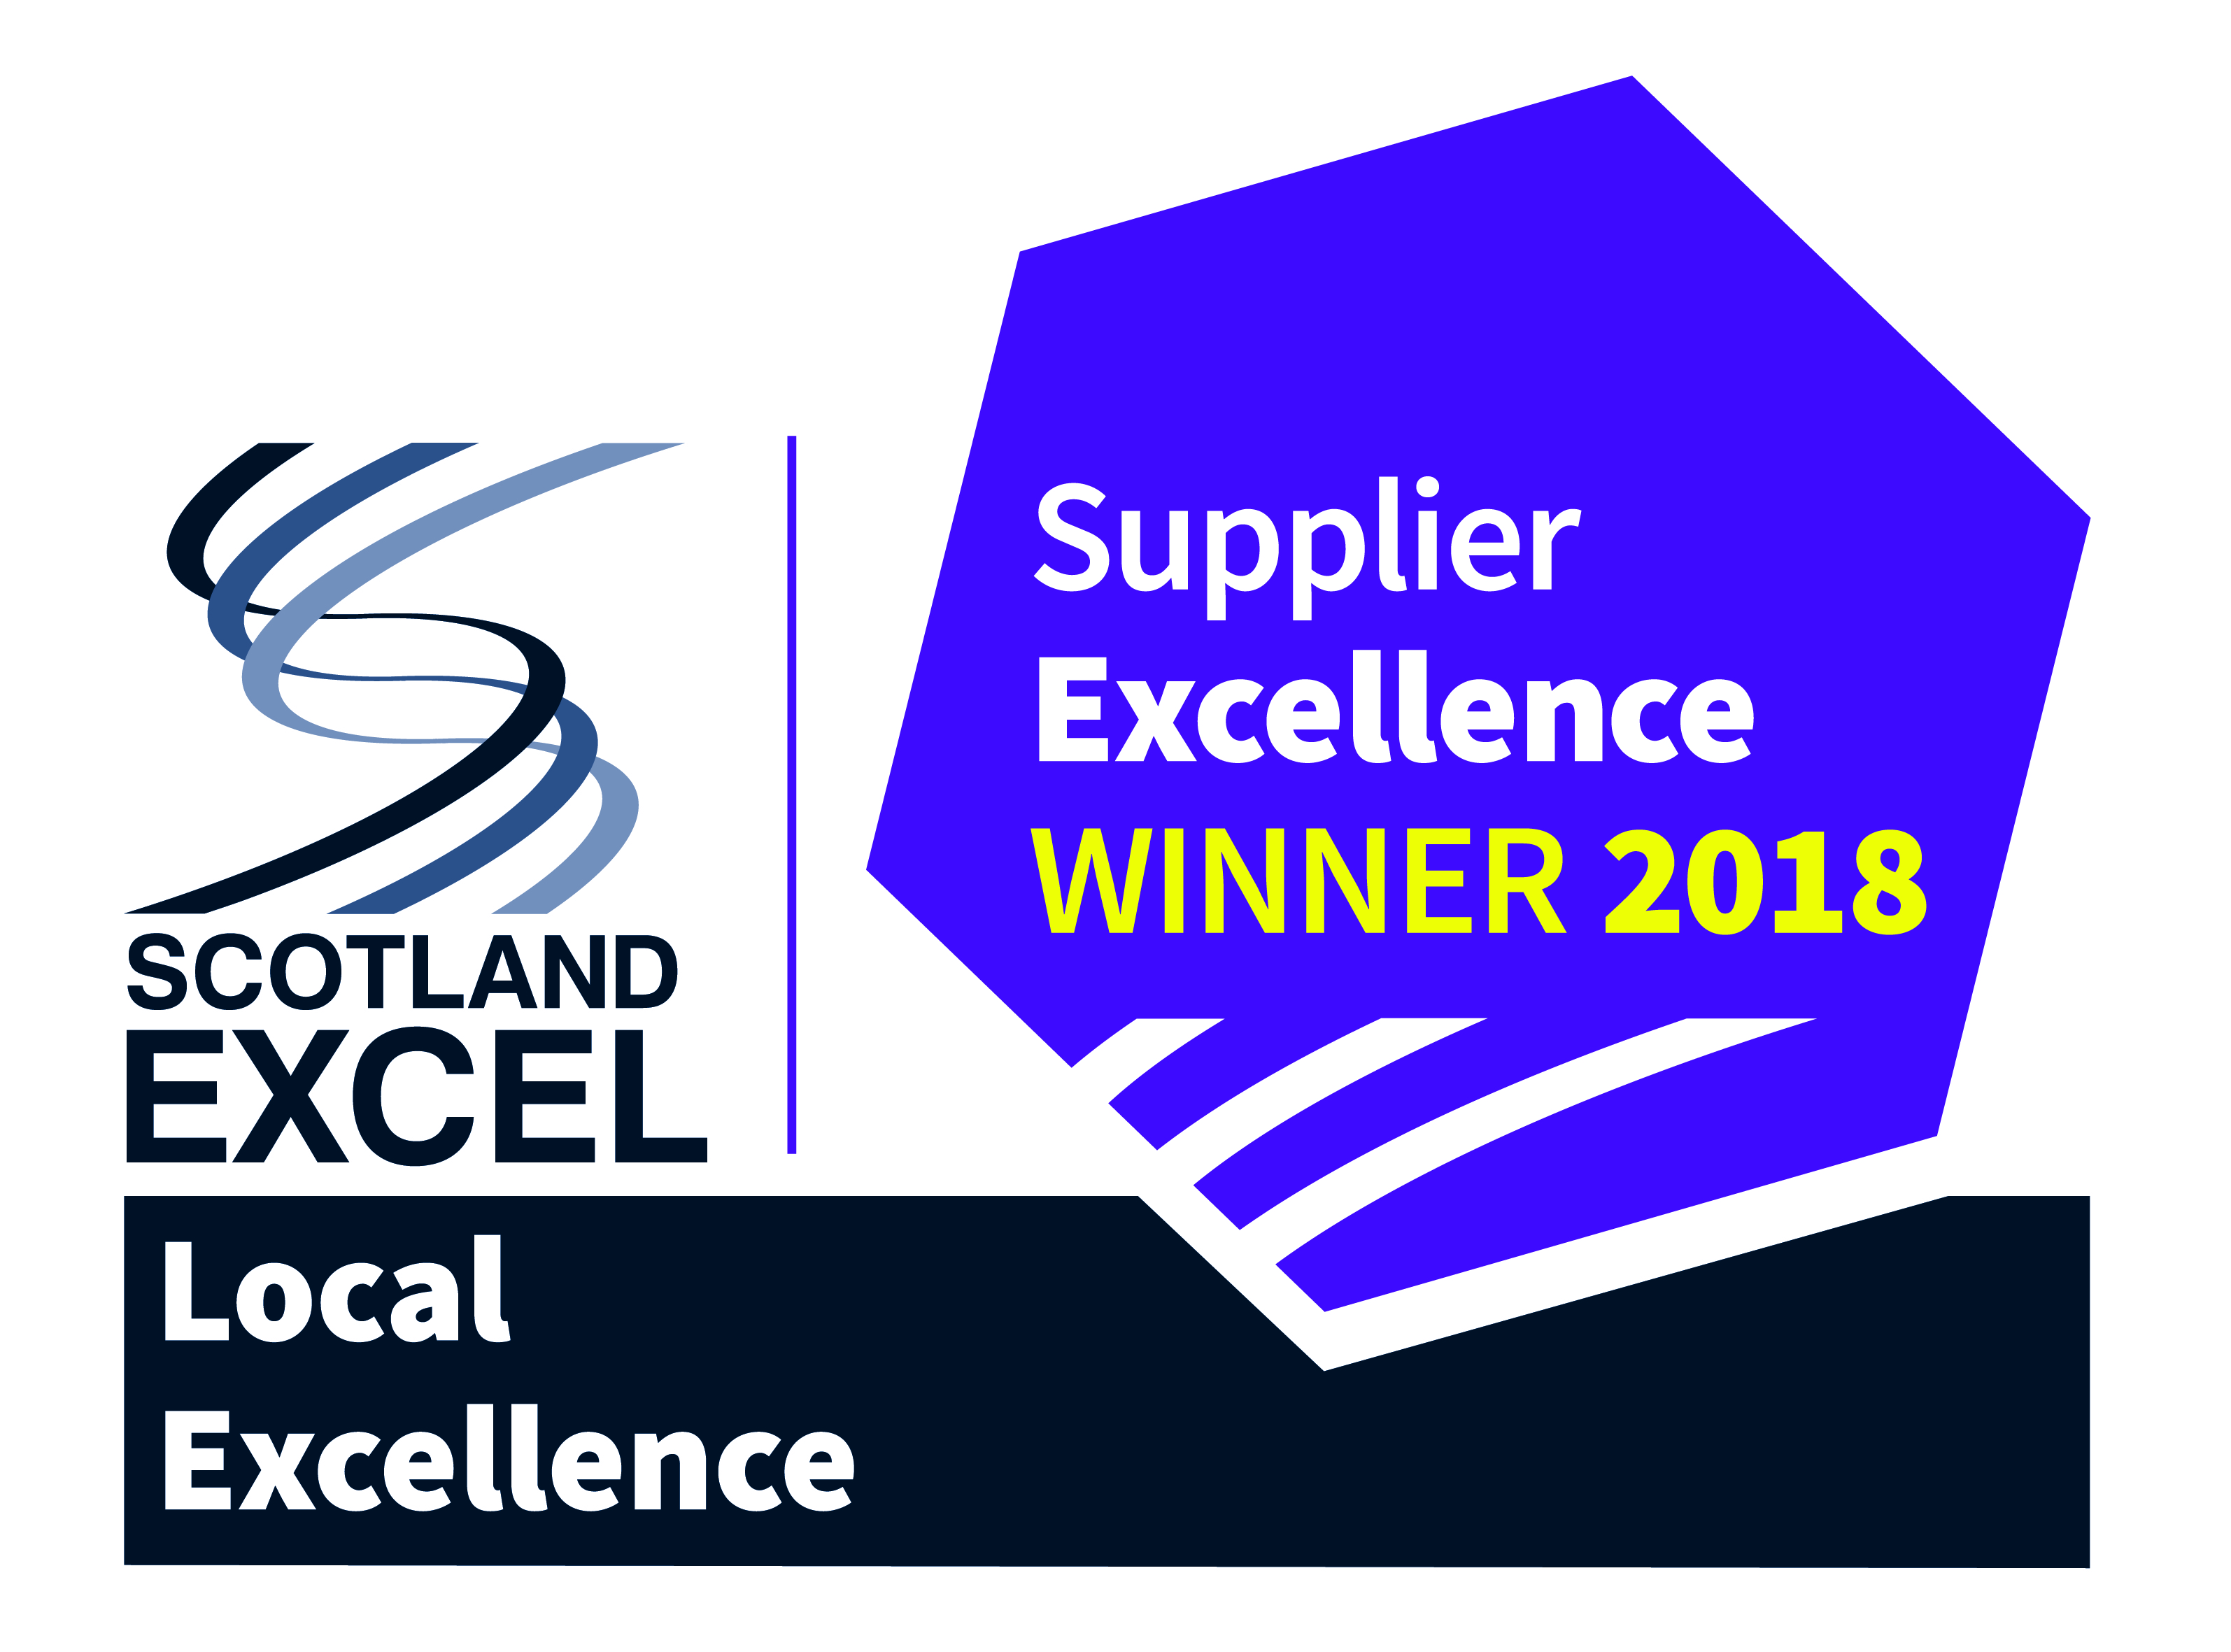 Scotland Excel Local Excellence Award 2018